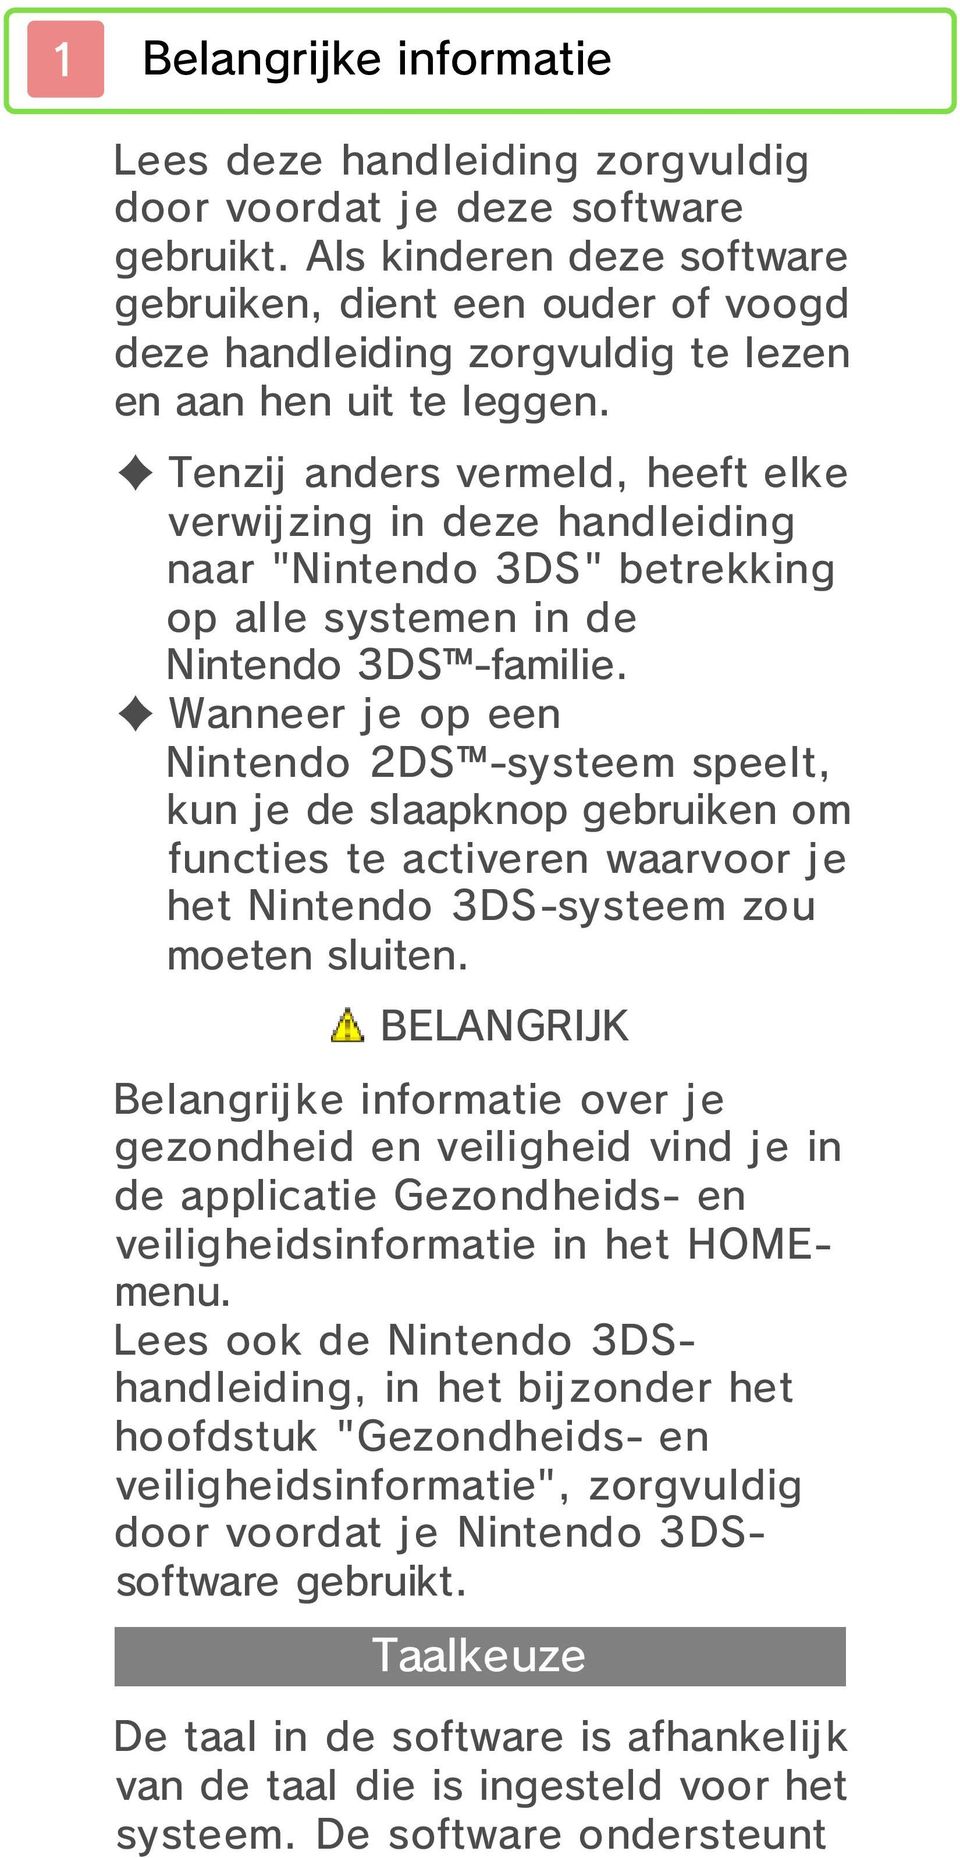 Tenzij anders vermeld, heeft elke verwijzing in deze handleiding naar "Nintendo 3DS" betrekking op alle systemen in de Nintendo 3DS -familie.